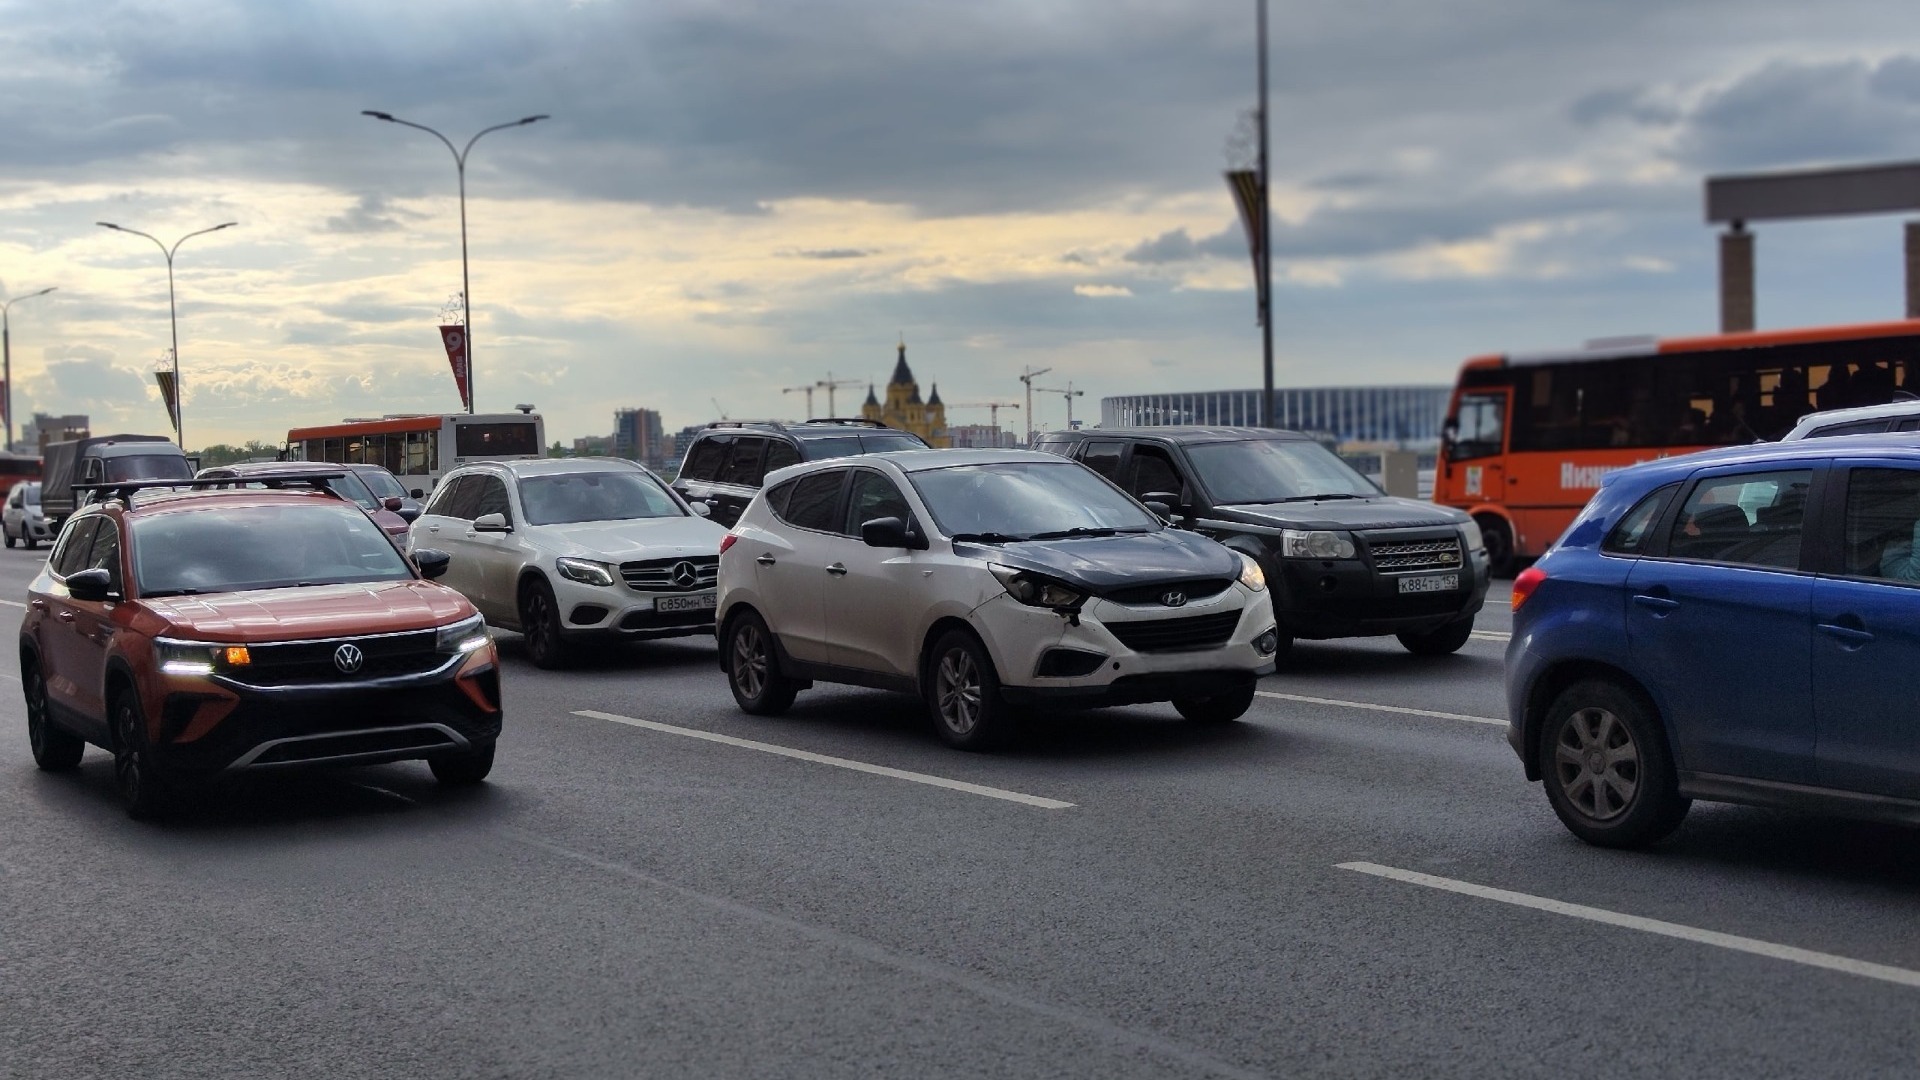 Мэр назвал ремонт дорог и массовые мероприятия причиной пробок в Нижнем Новгороде